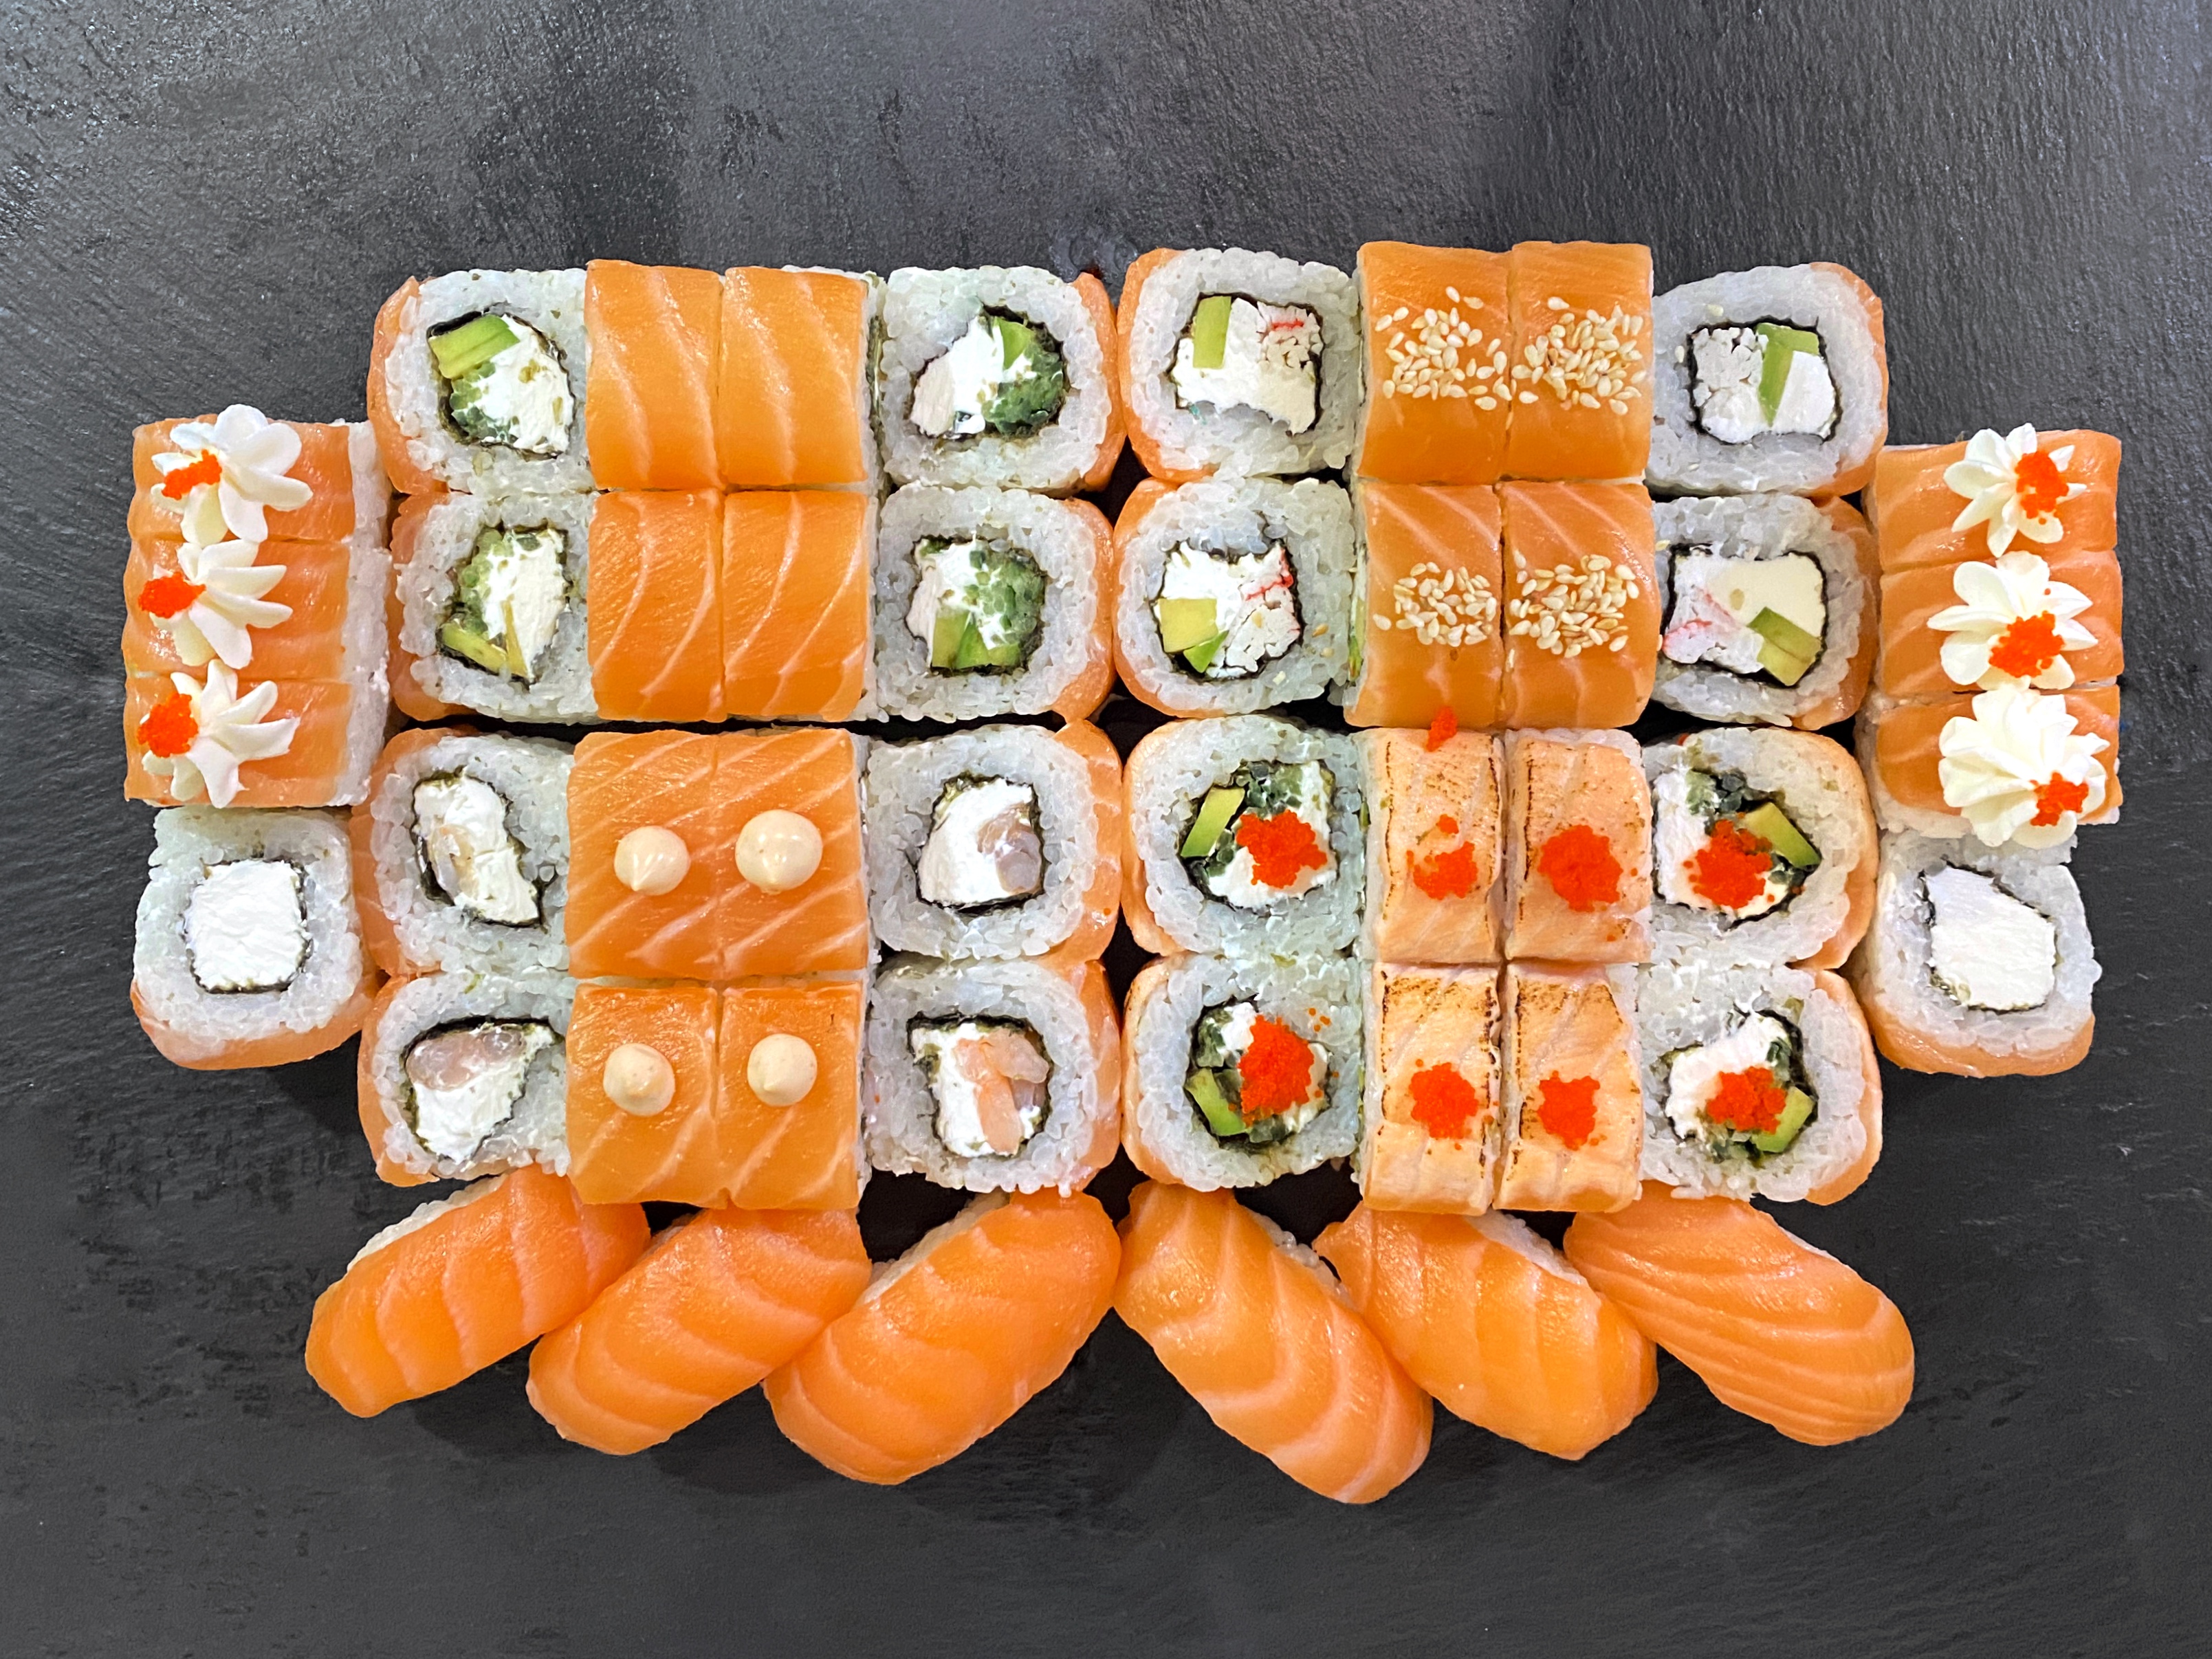 Заказать суши с доставкой в киеве фото 86